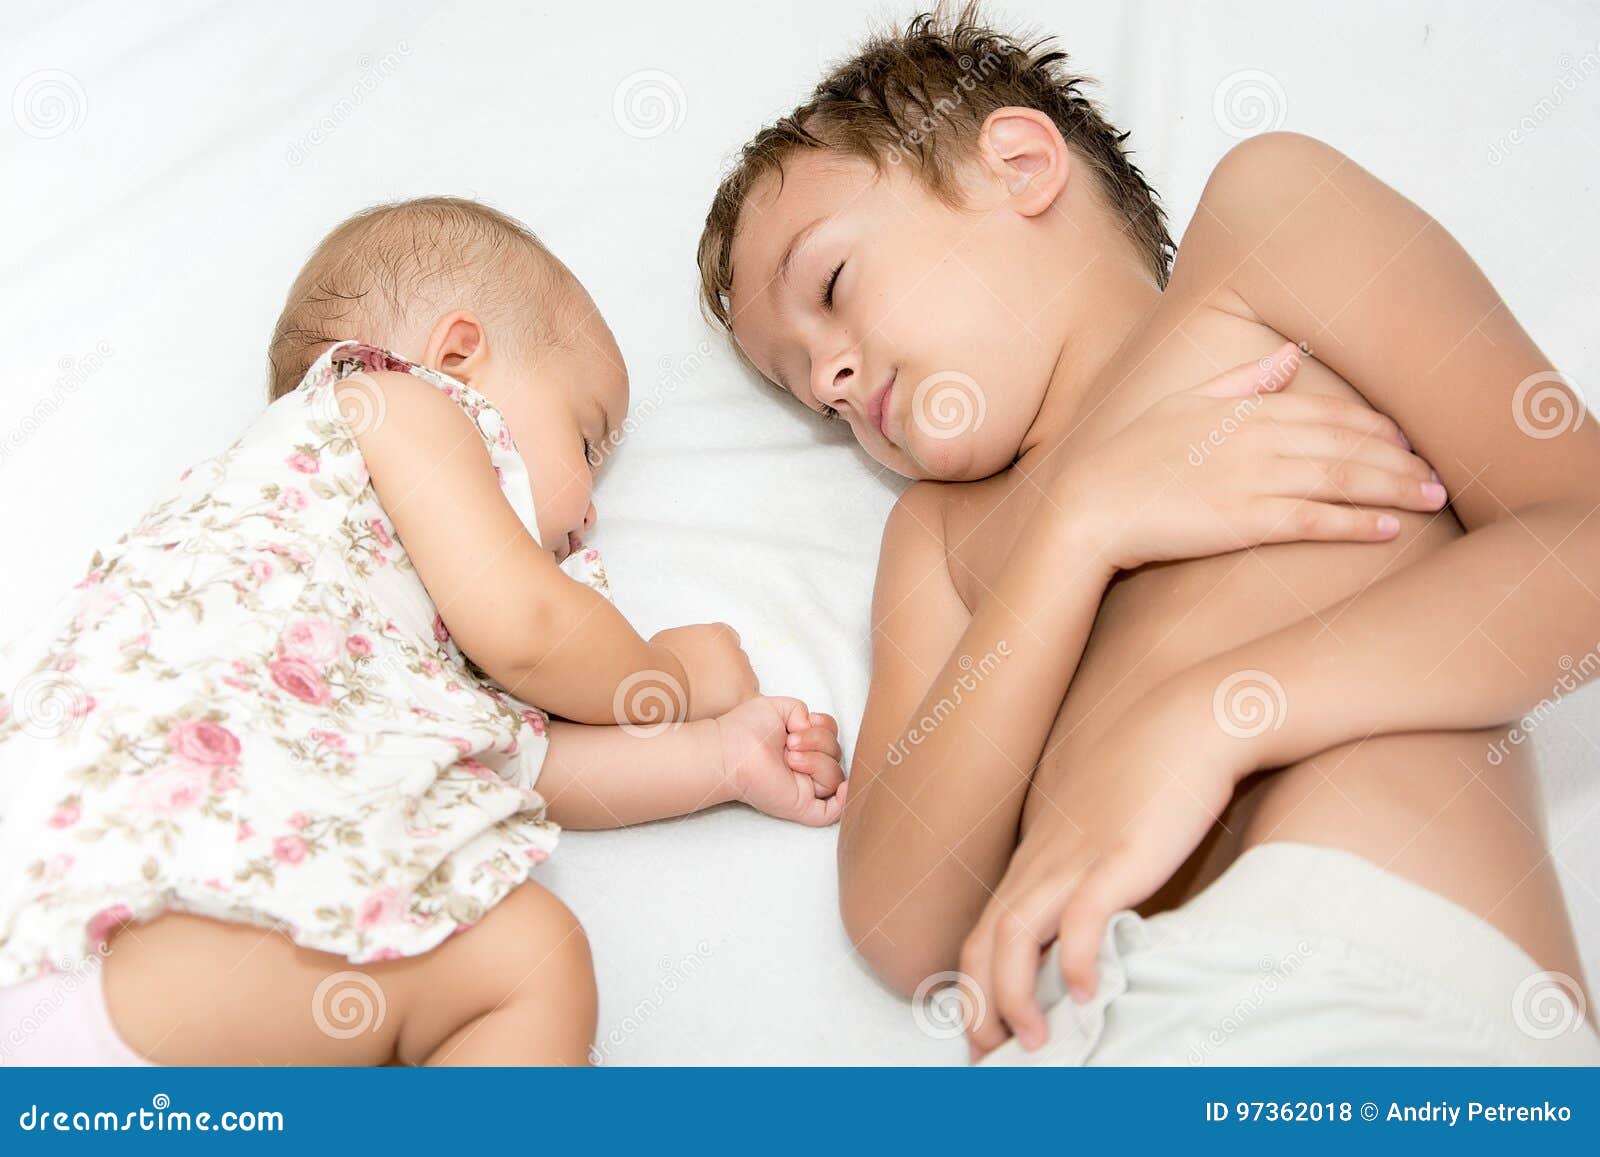 cheng ka ho share sister brother sleeping together photos